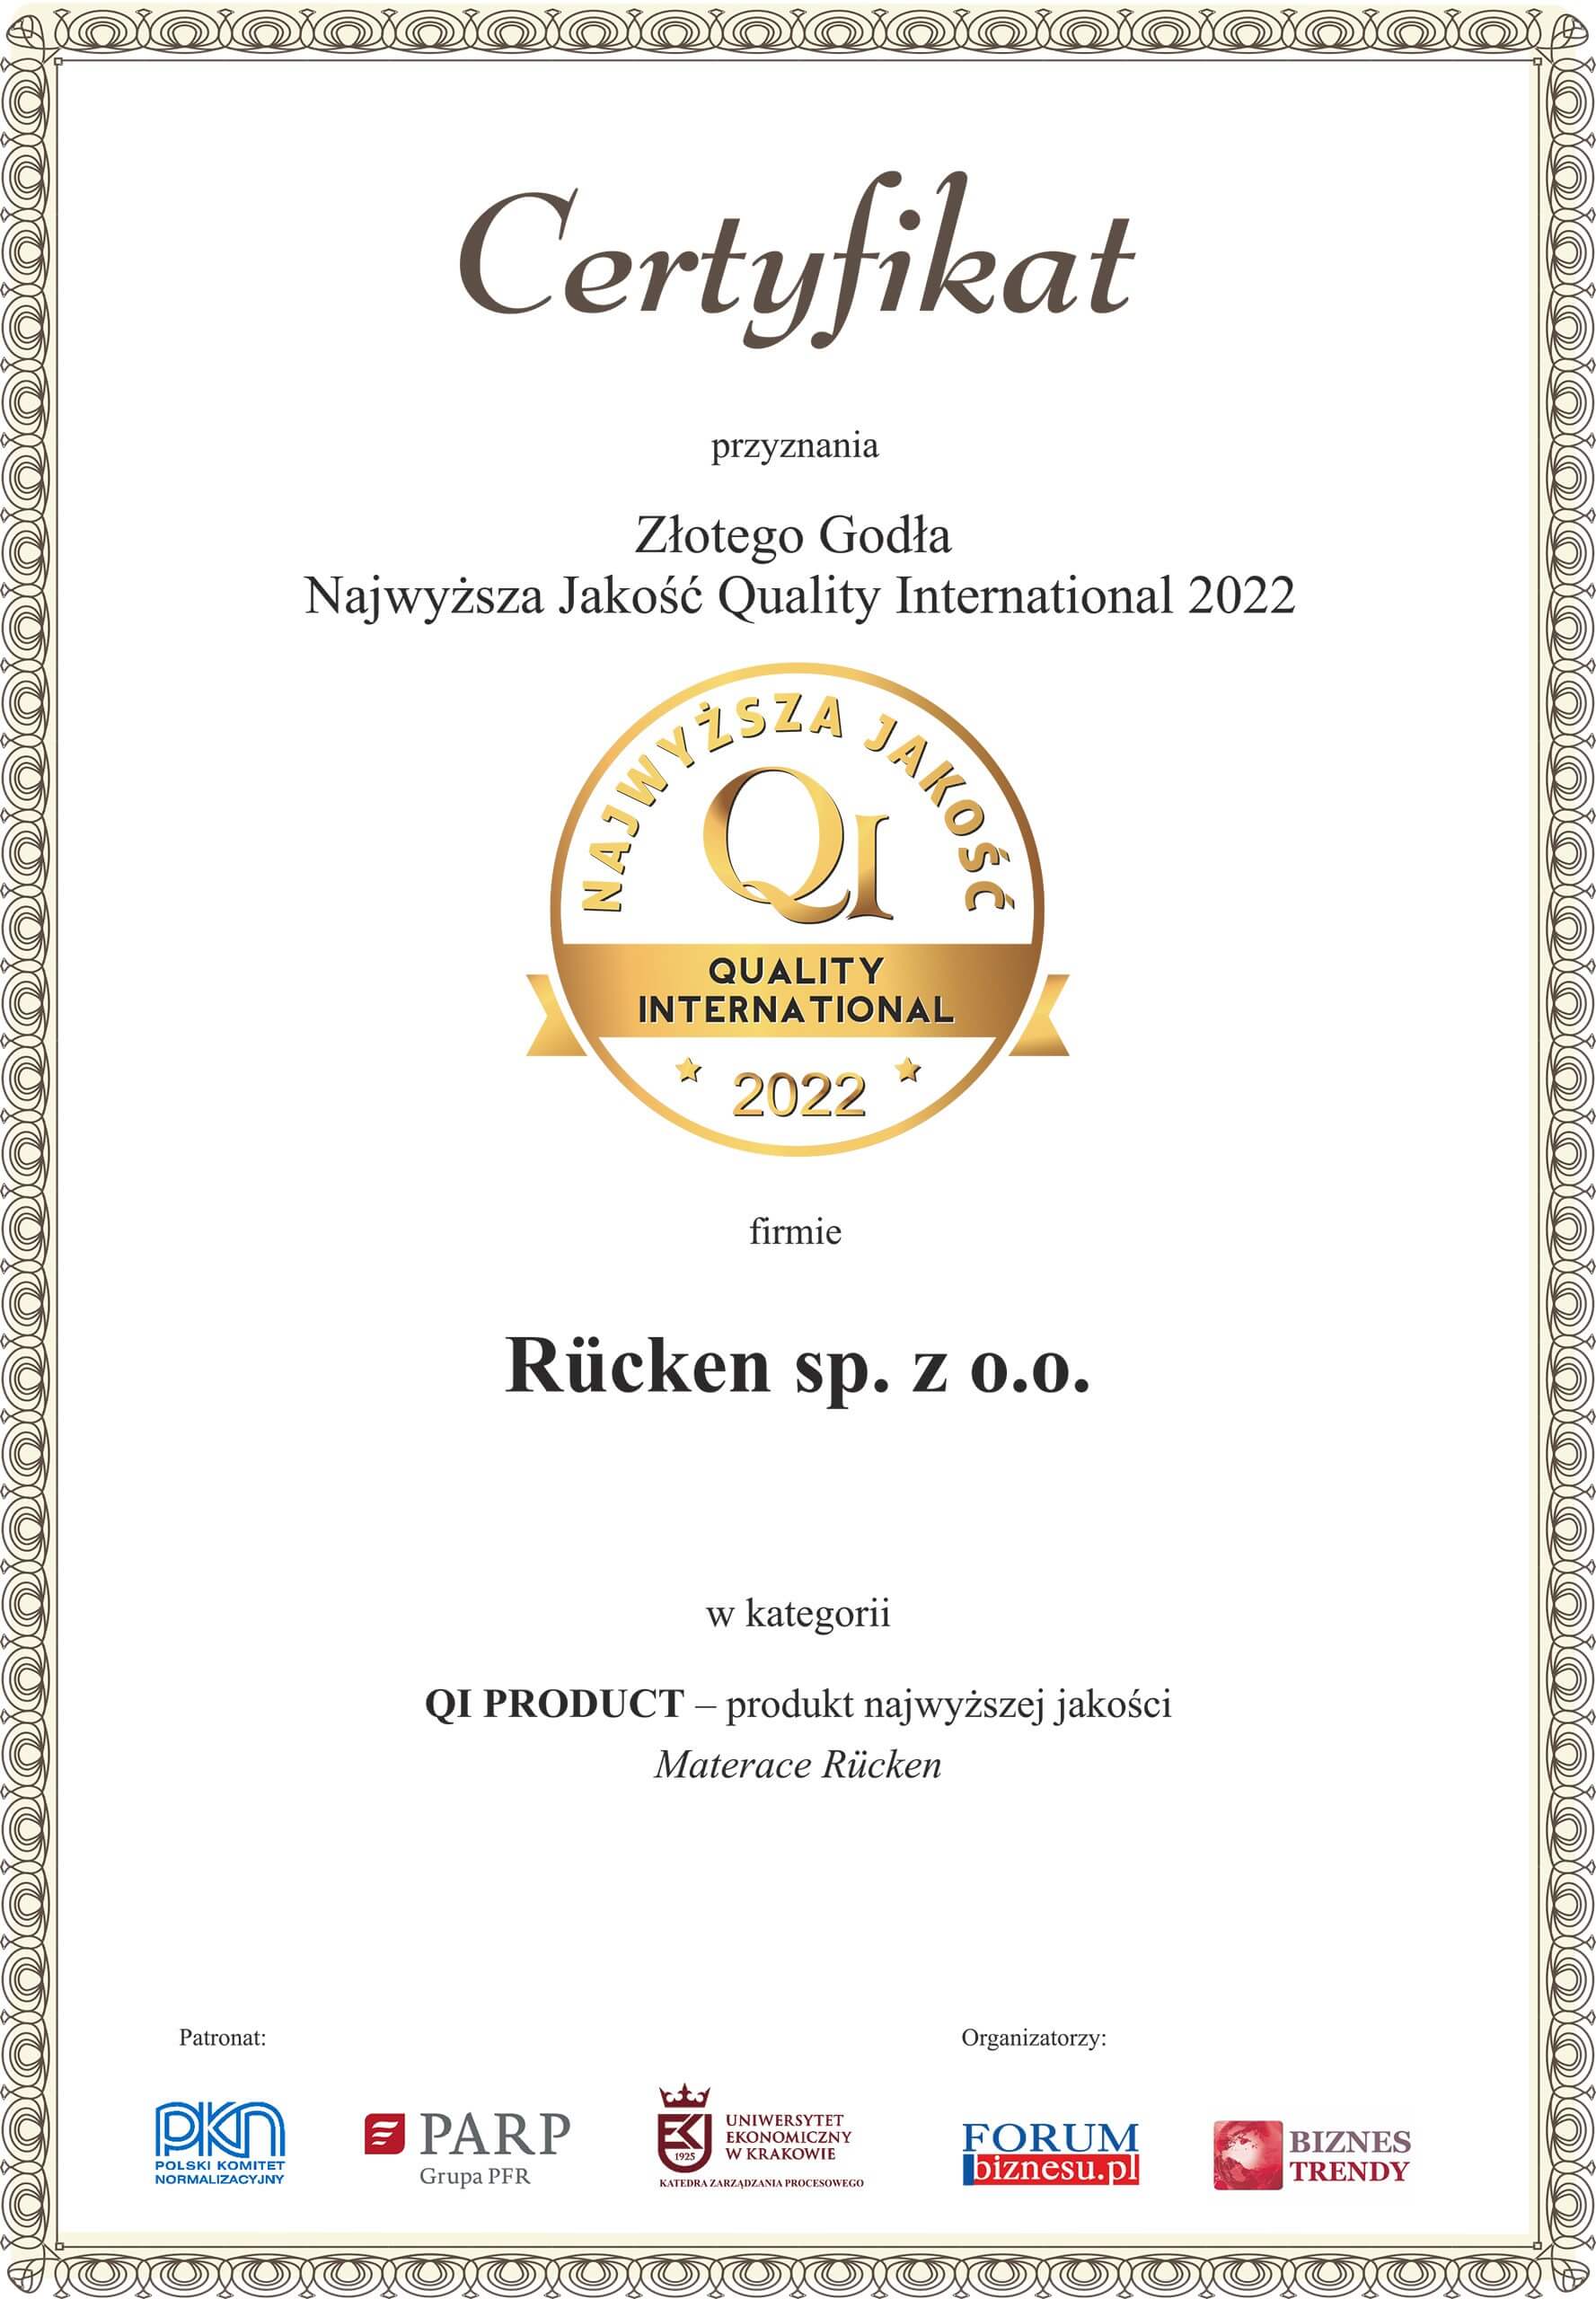 Certyfikat Złotego Godła dla Rucken